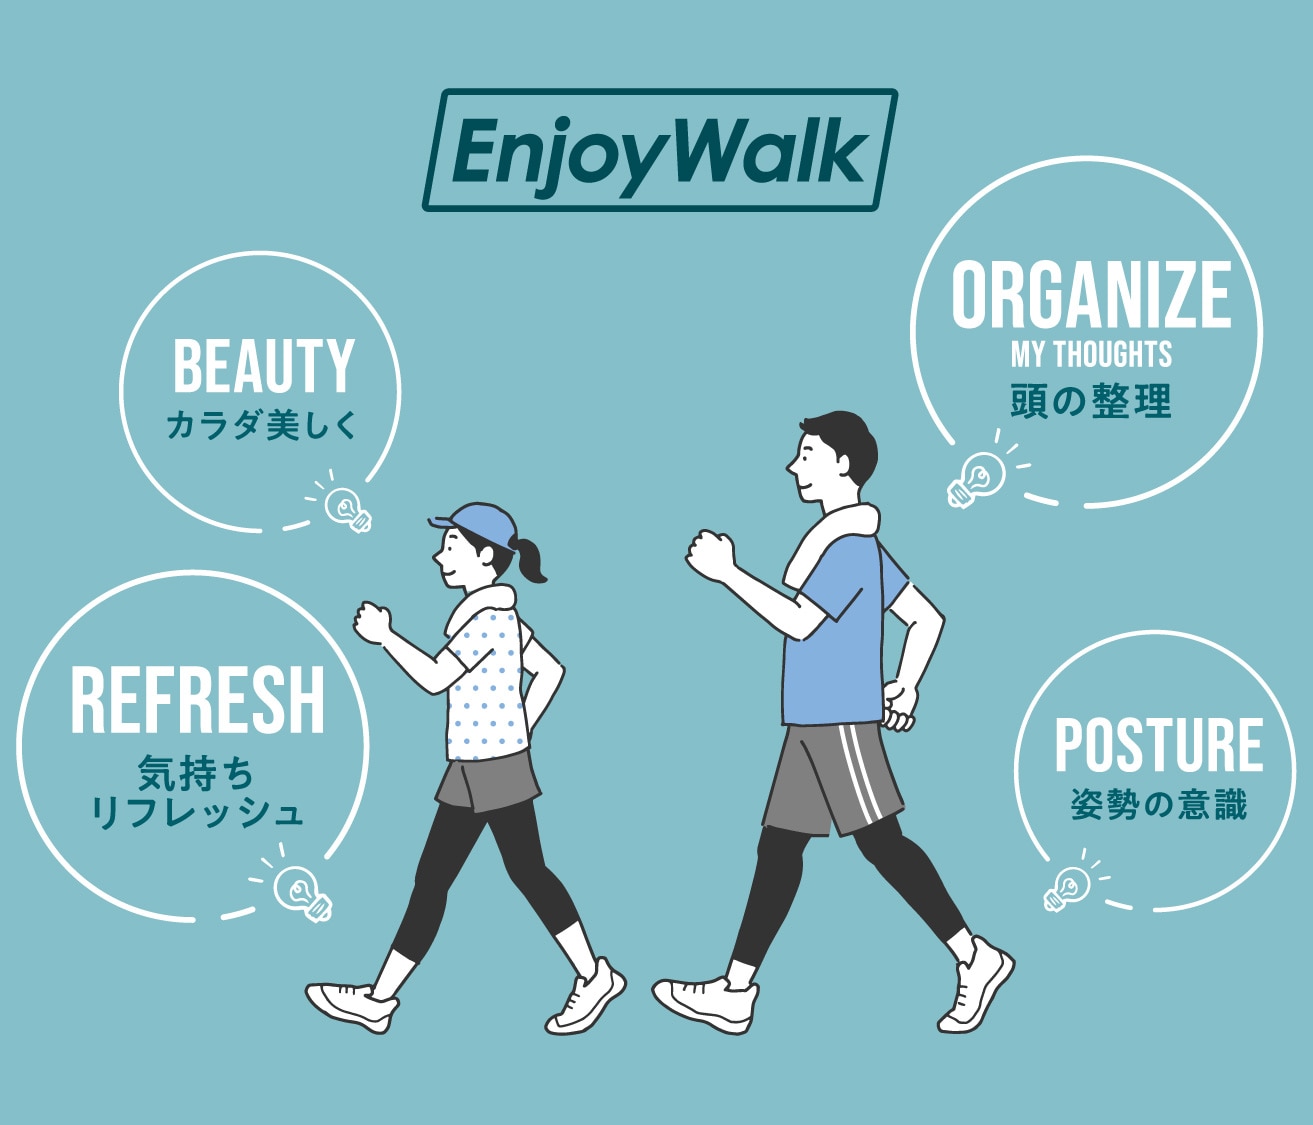 Enjoy Walk